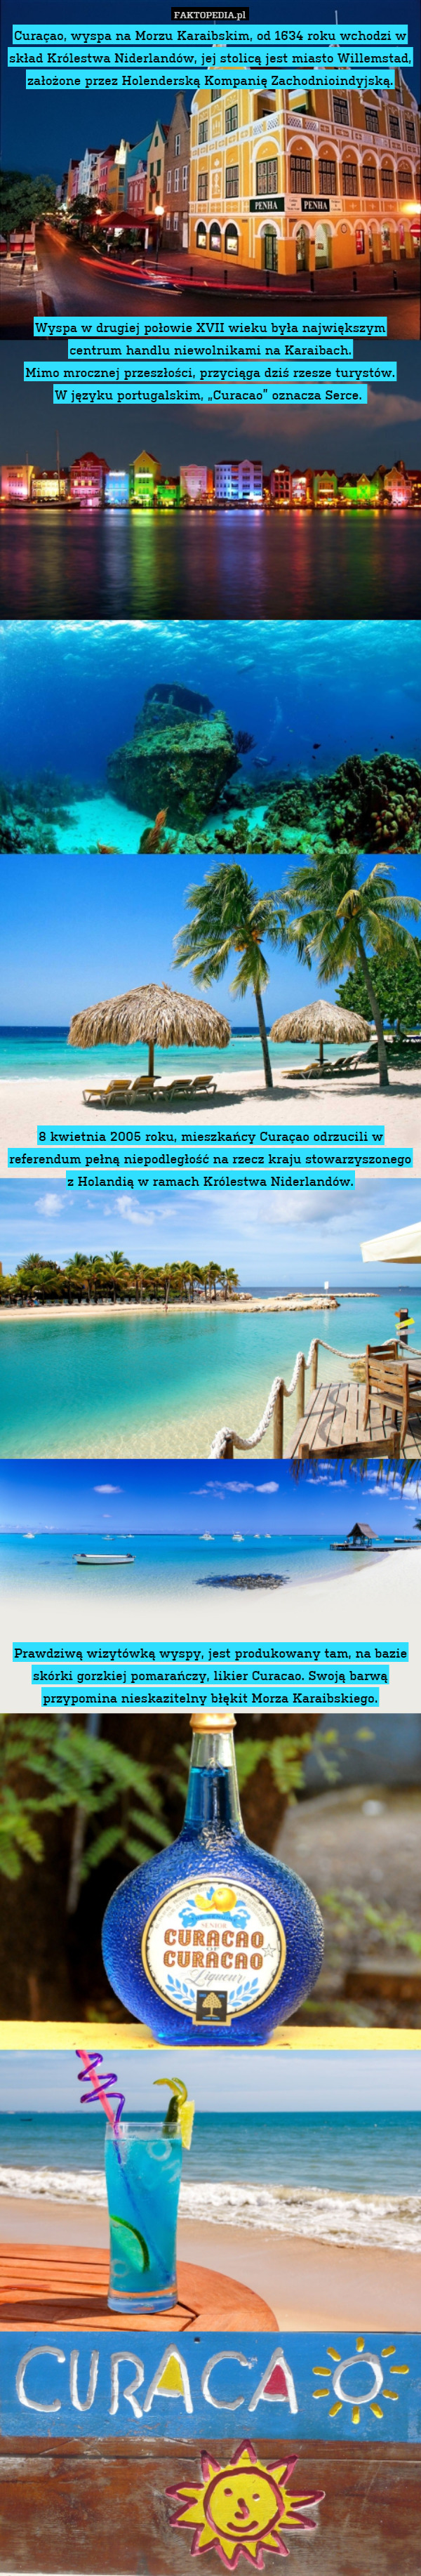 Curaçao, wyspa na Morzu Karaibskim, od 1634 roku wchodzi w skład Królestwa Niderlandów, jej stolicą jest miasto Willemstad, założone przez Holenderską Kompanię Zachodnioindyjską.










Wyspa w drugiej połowie XVII wieku była największym centrum handlu niewolnikami na Karaibach.
Mimo mrocznej przeszłości, przyciąga dziś rzesze turystów.
W języku portugalskim, „Curacao” oznacza Serce. 
































8 kwietnia 2005 roku, mieszkańcy Curaçao odrzucili w referendum pełną niepodległość na rzecz kraju stowarzyszonego z Holandią w ramach Królestwa Niderlandów.




















Prawdziwą wizytówką wyspy, jest produkowany tam, na bazie skórki gorzkiej pomarańczy, likier Curacao. Swoją barwą przypomina nieskazitelny błękit Morza Karaibskiego. 